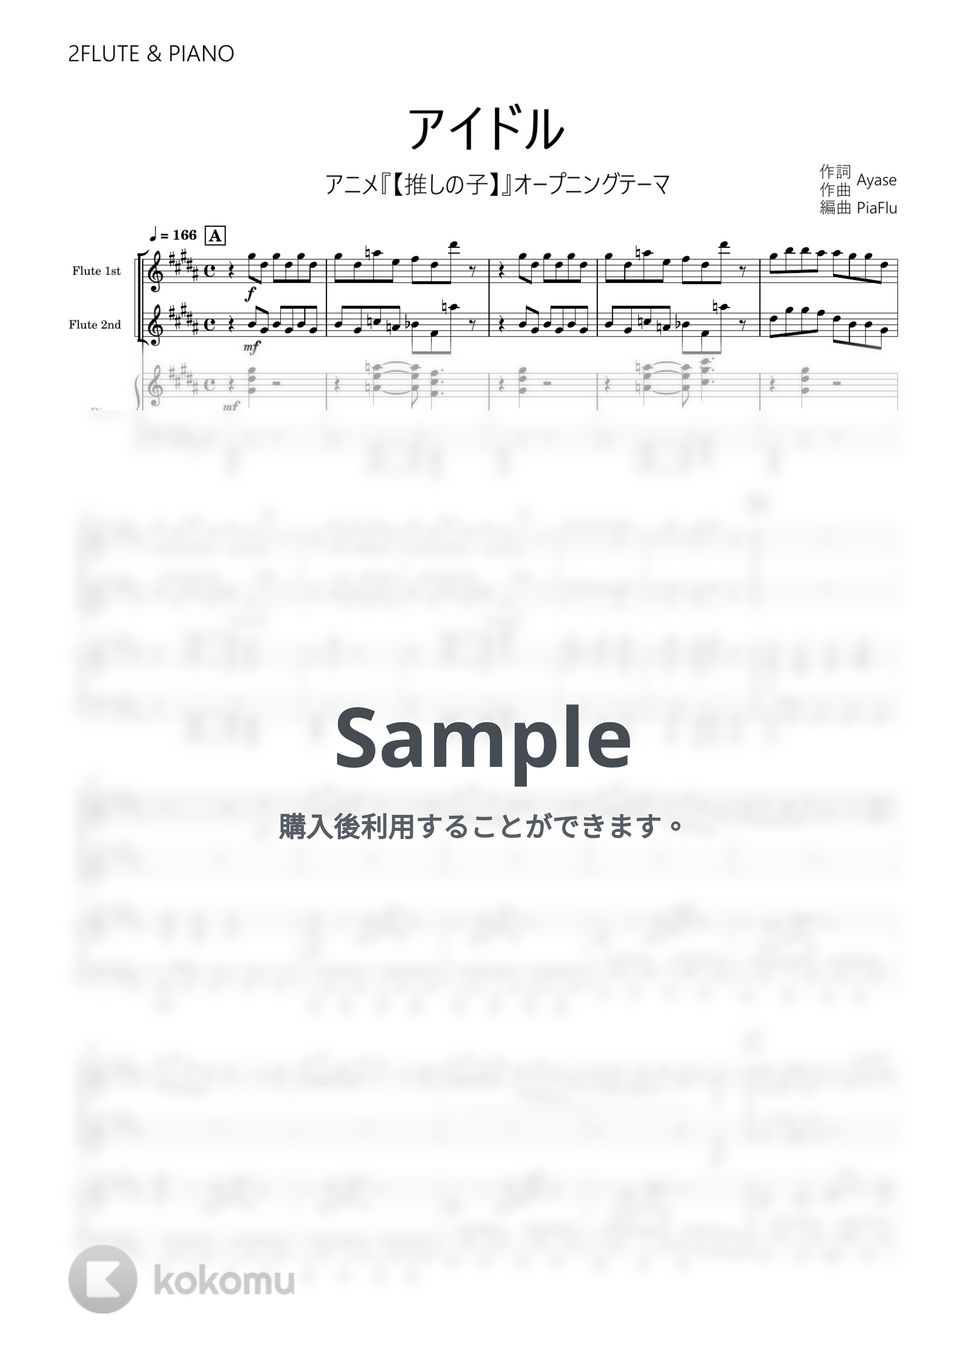 YOASOBI - アイドル (フルート2重奏&ピアノ伴奏) by PiaFlu